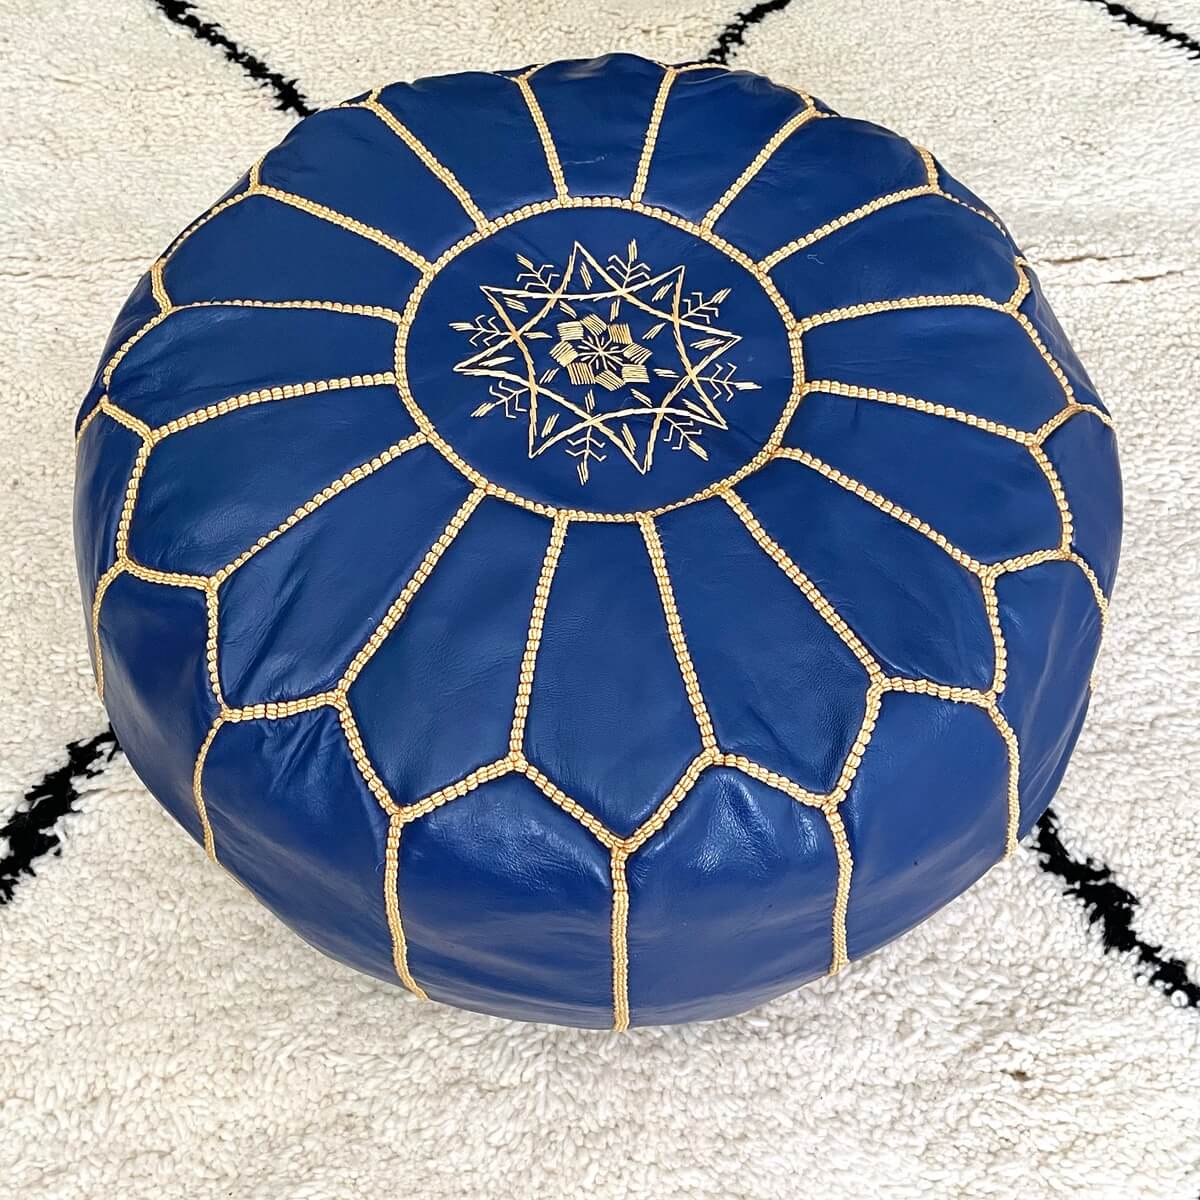 taburet pouf pentru fotoliu realizat manual de artizani din maroc din piele naturala de capra, albastru